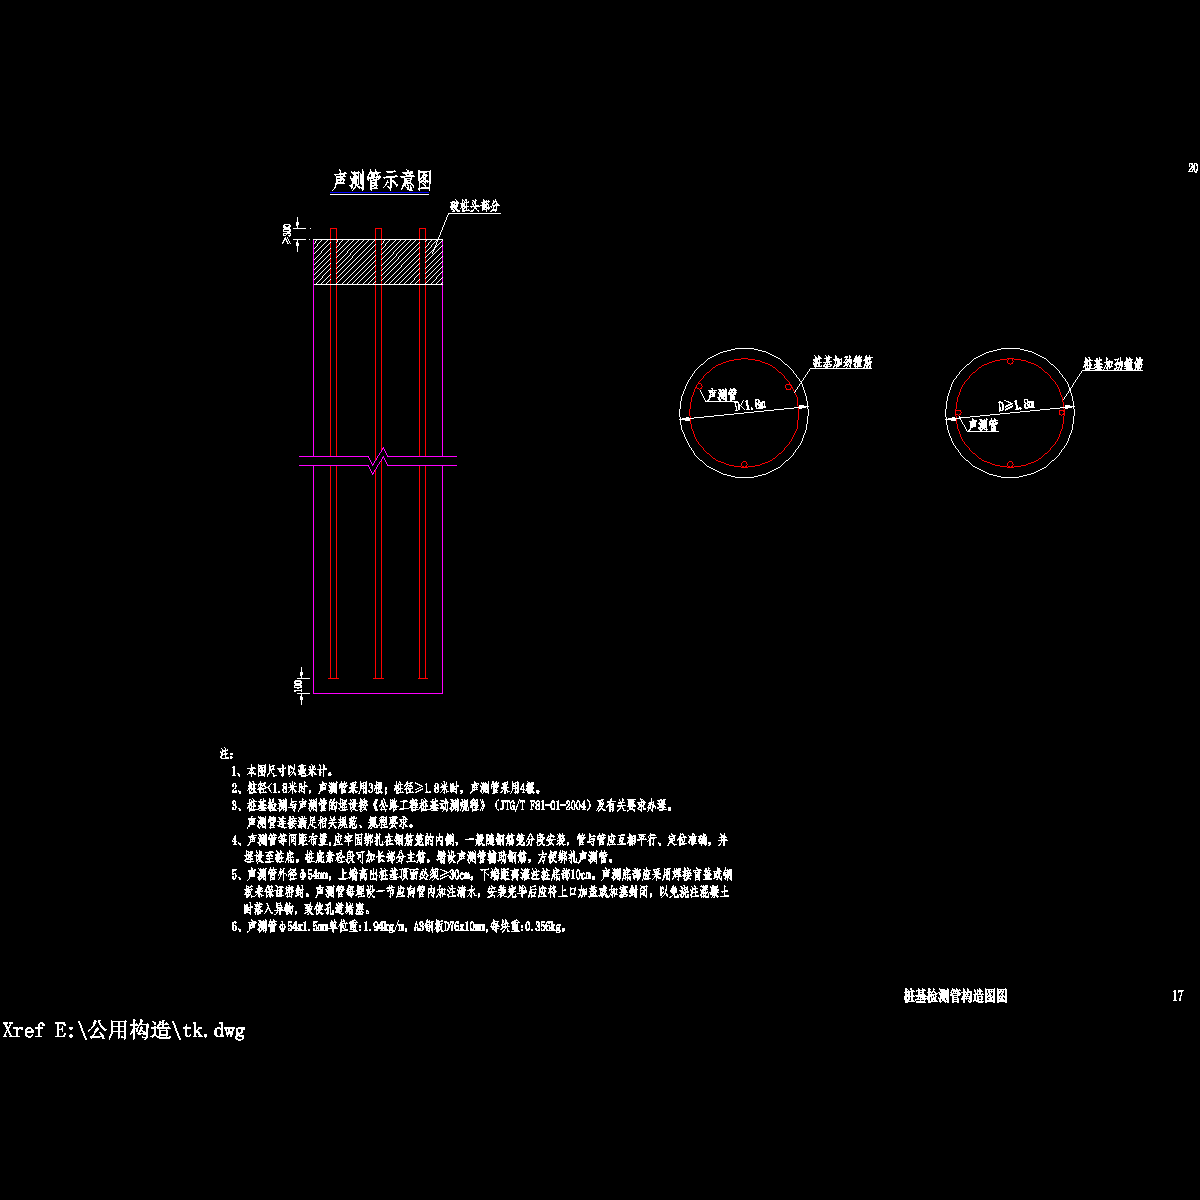 sqt1-17 桩基检测管构造图.dwg